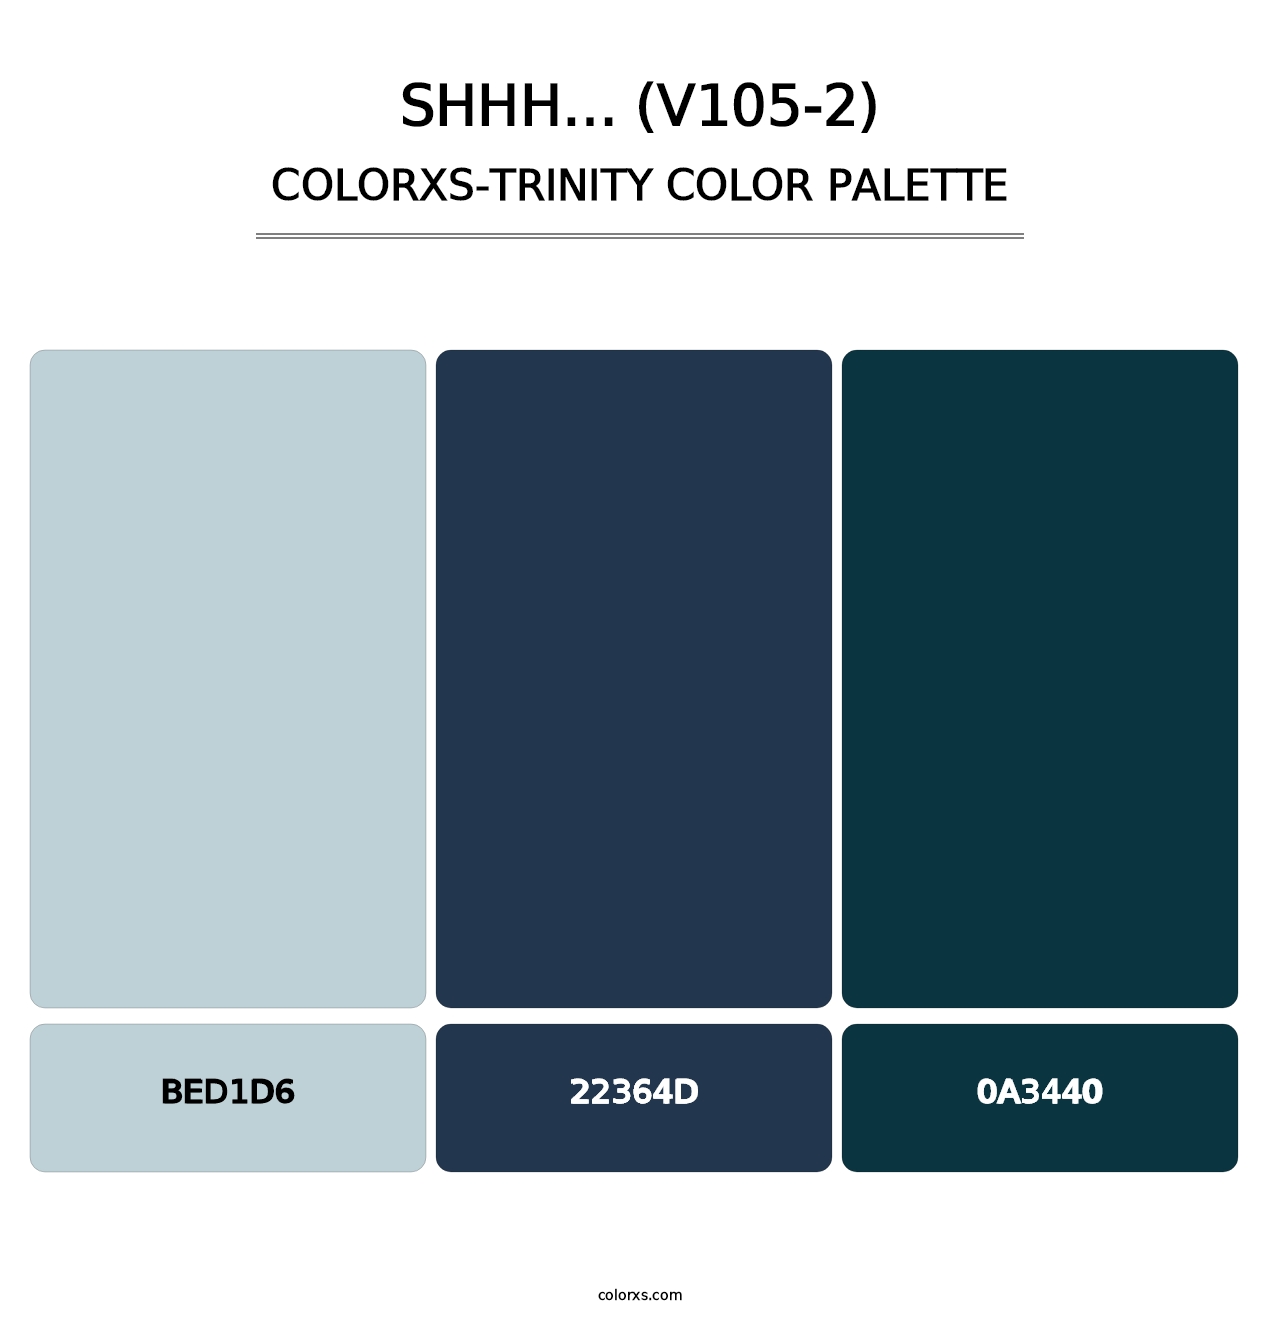 Shhh… (V105-2) - Colorxs Trinity Palette